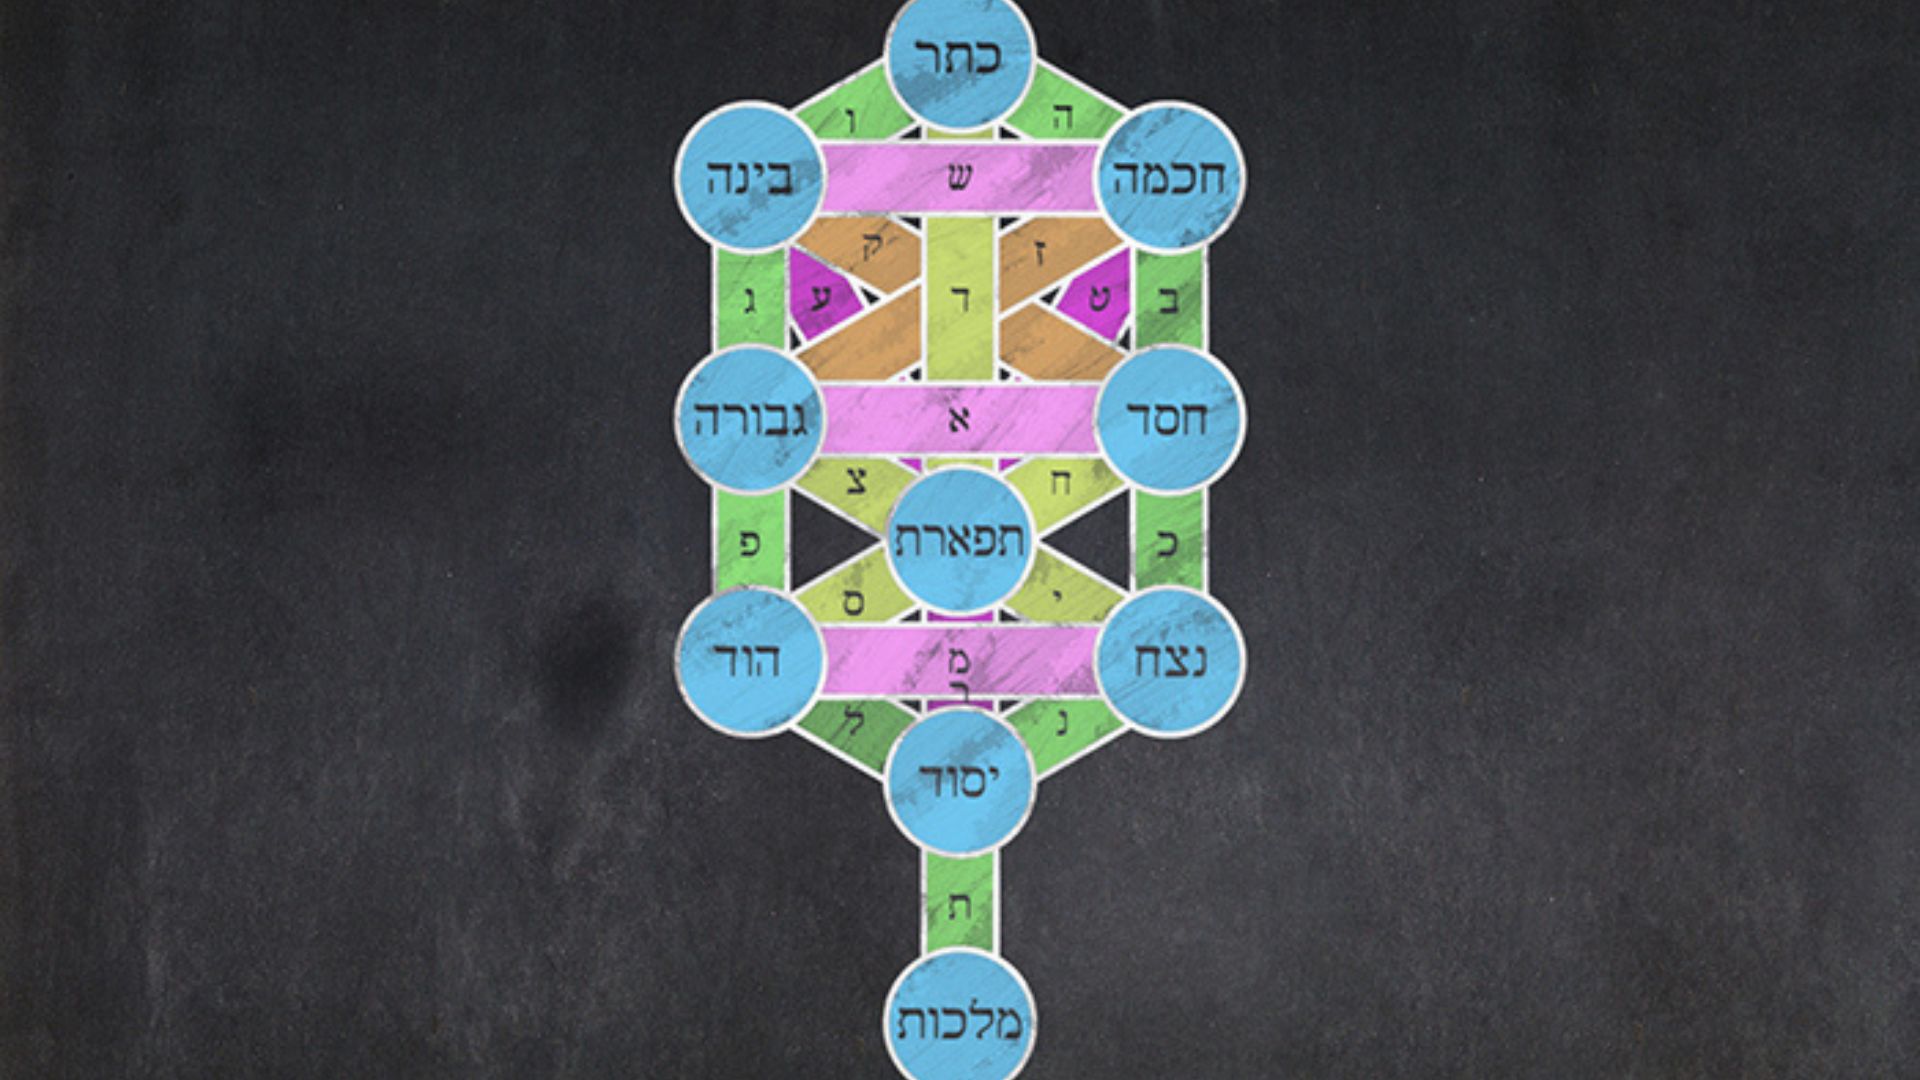 Kabbalah card with ancient symbols